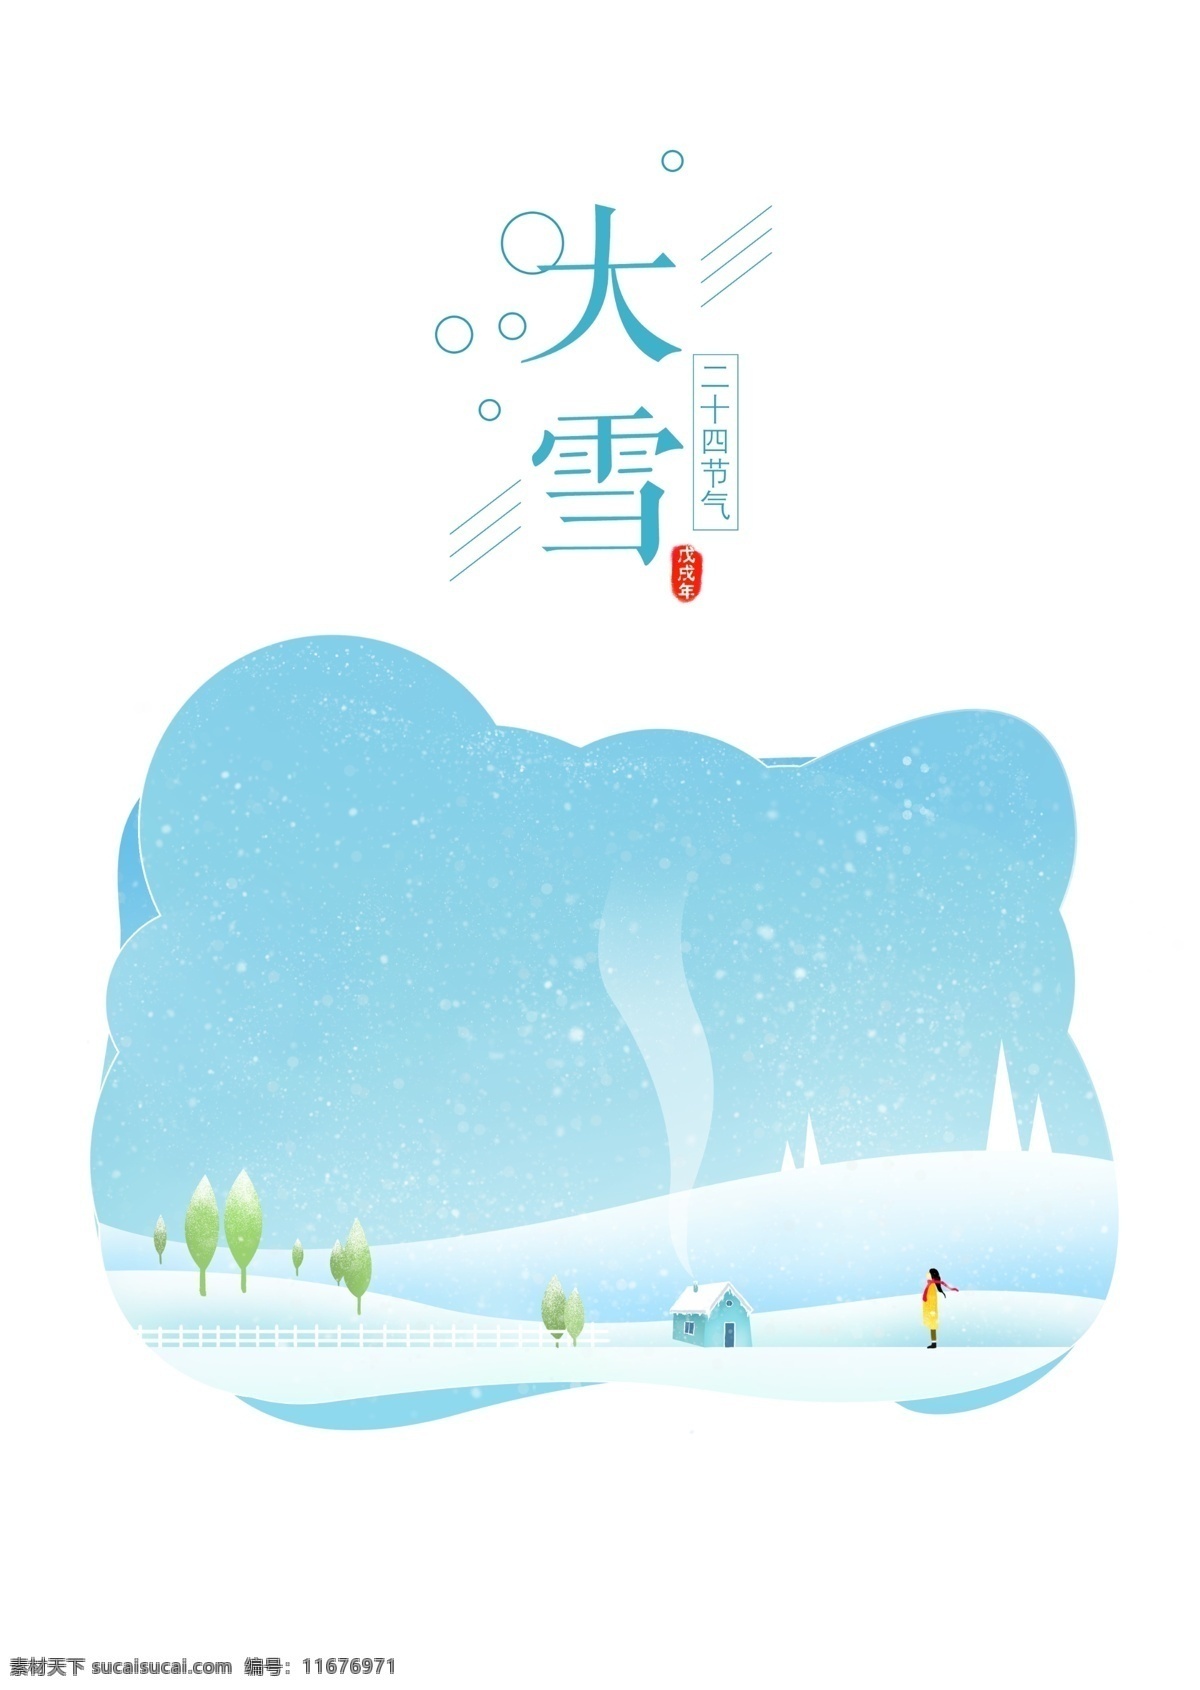 二十四节气 大雪 手绘 海报 插画 大雪的海报 大雪插画 下雪 冬季 冷 唯美雪景 手绘大雪插画 图